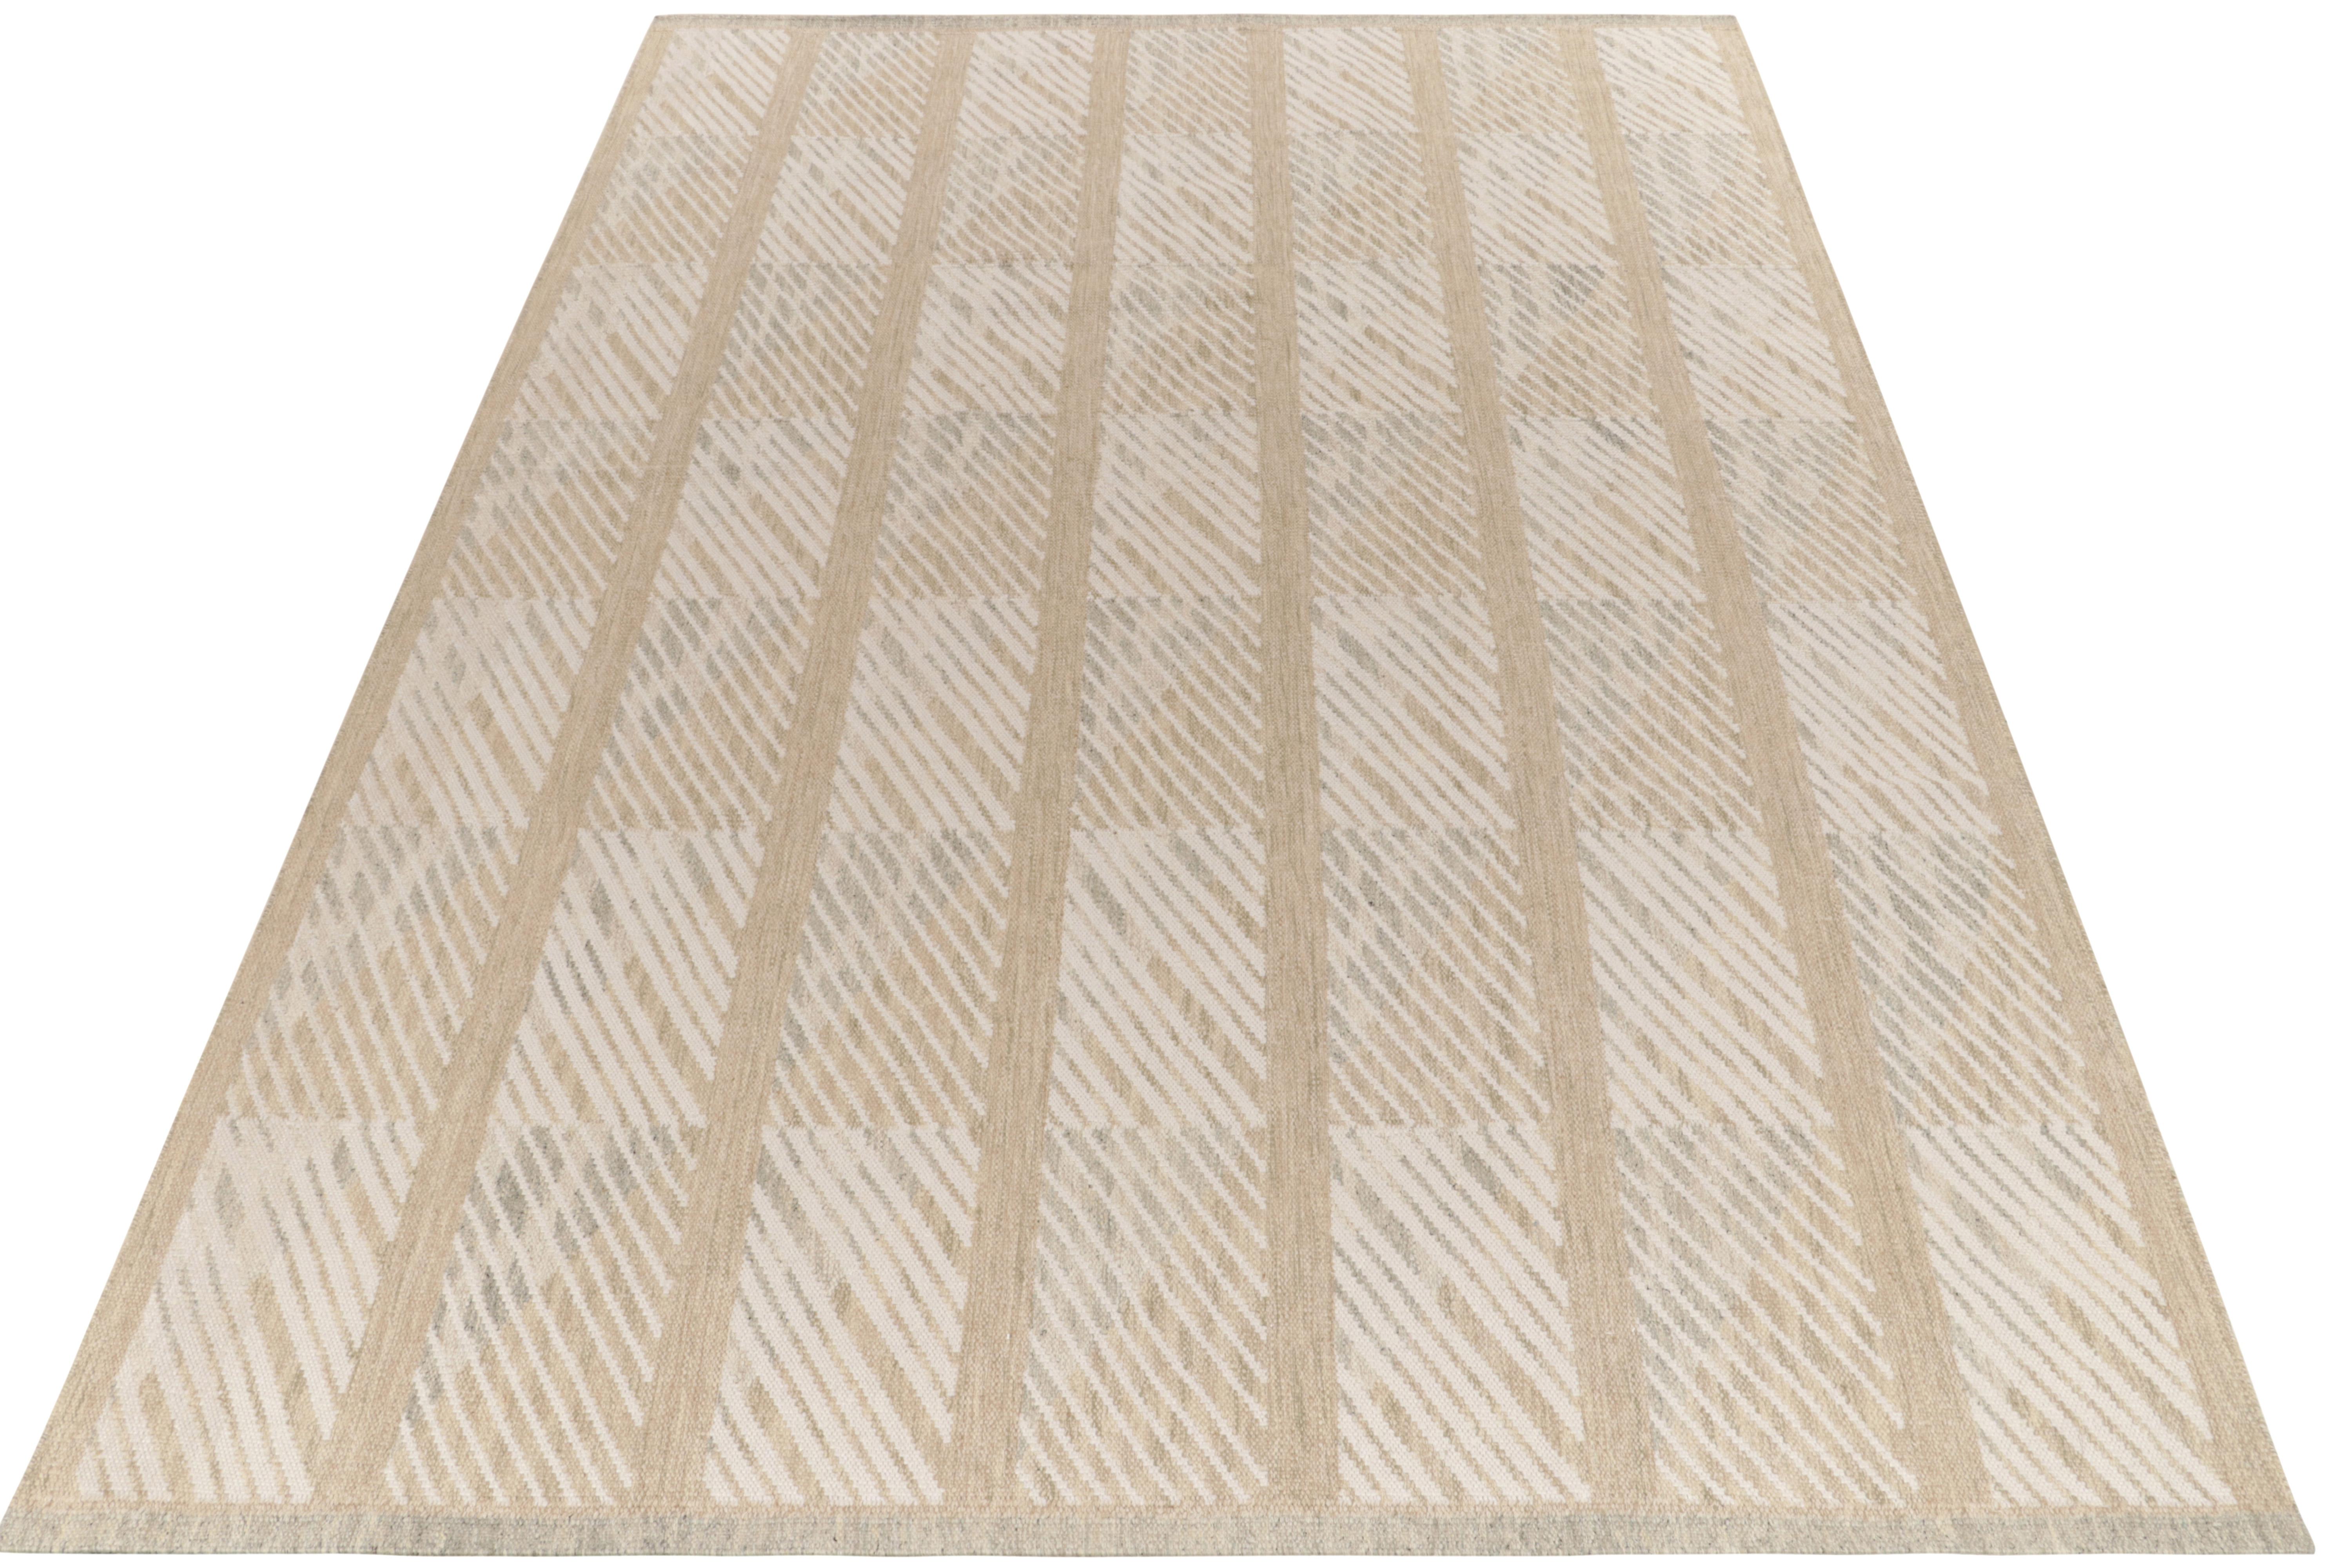 Dieser handgewebte 10x14 Kelim aus feiner Wolle gehört zu unserer Kollektion preisgekrönter skandinavischer Flachgewebe. Dieser Teppich zeichnet sich durch ein scharfes geometrisches Muster mit Streifen in Grau, Weiß und Beige-Braun aus, das eine